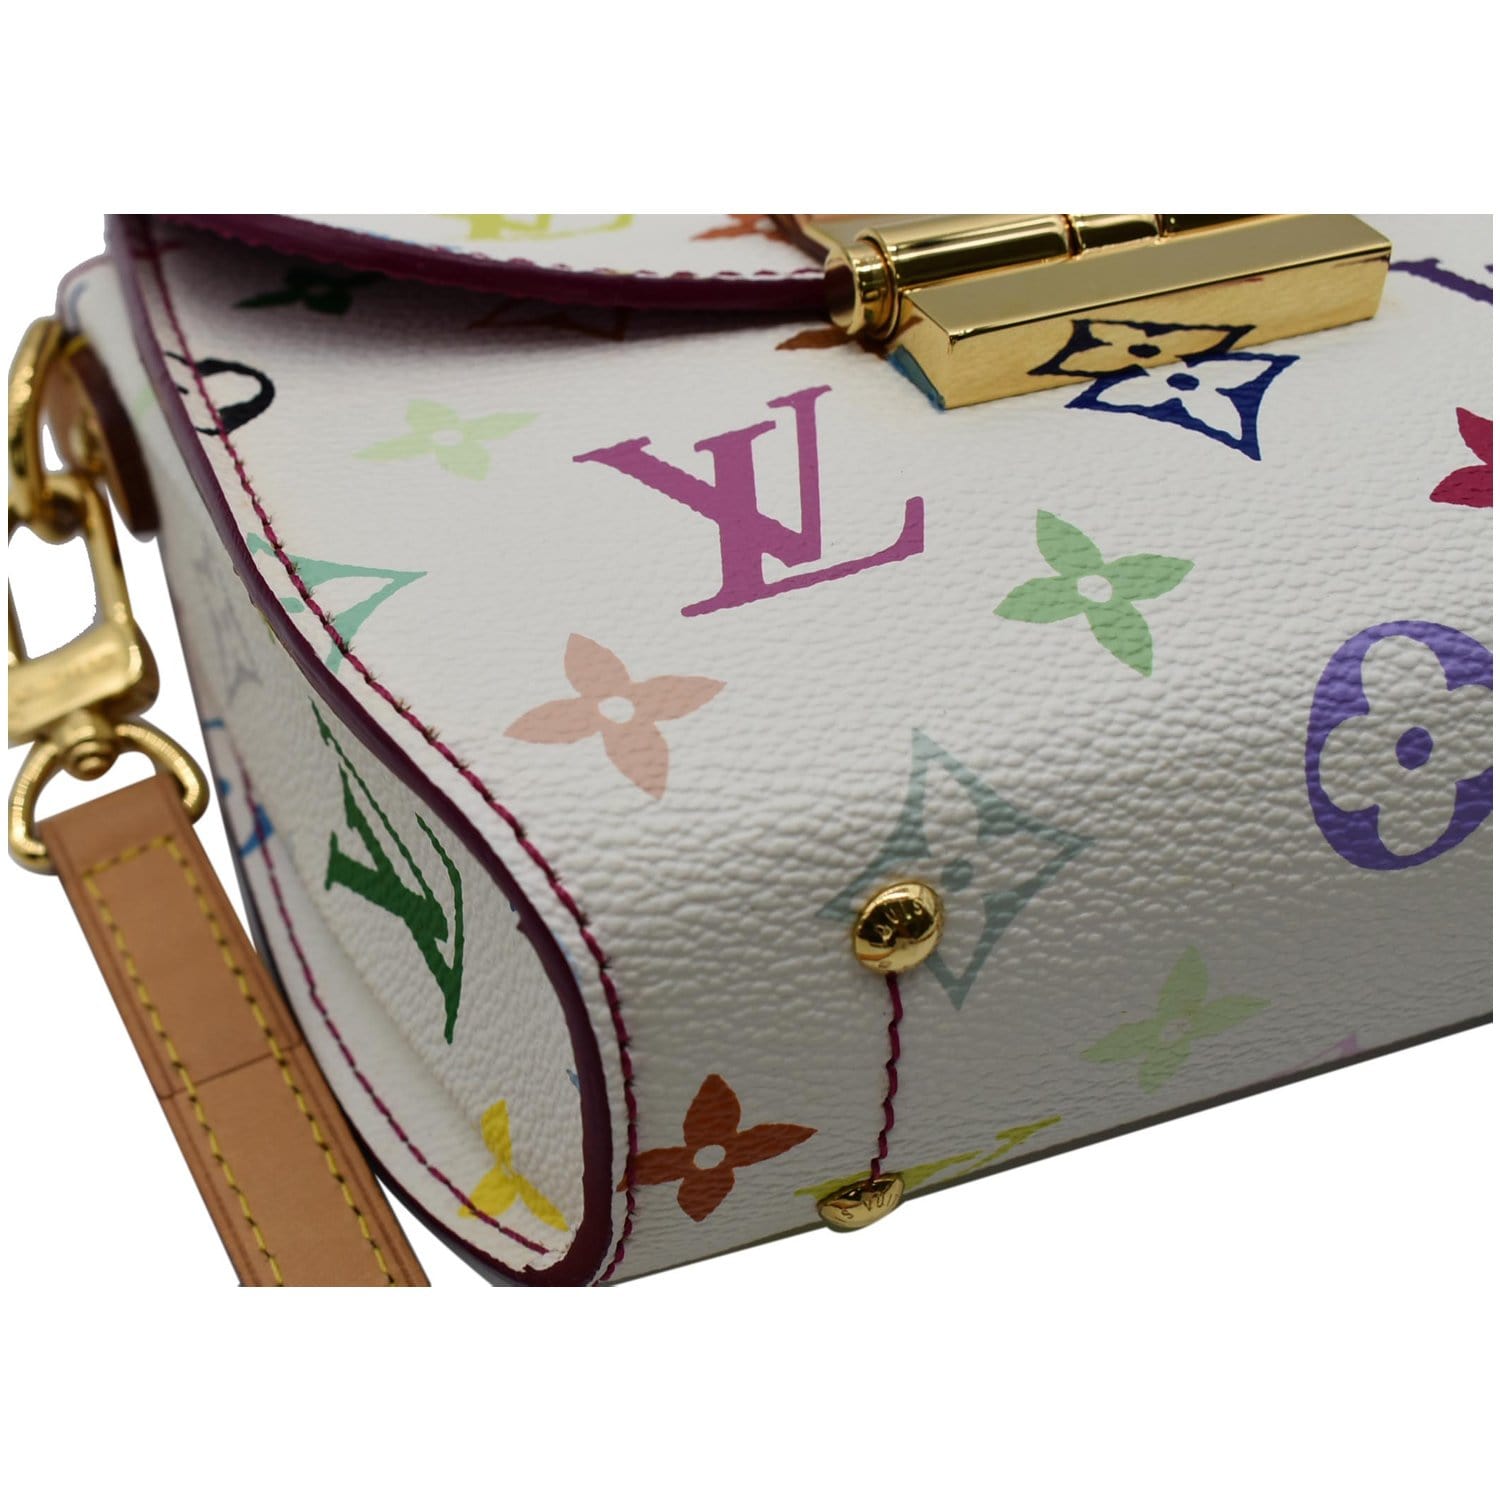 New arrivals: Louis Vuitton Monogram multicolor bag and Hermès